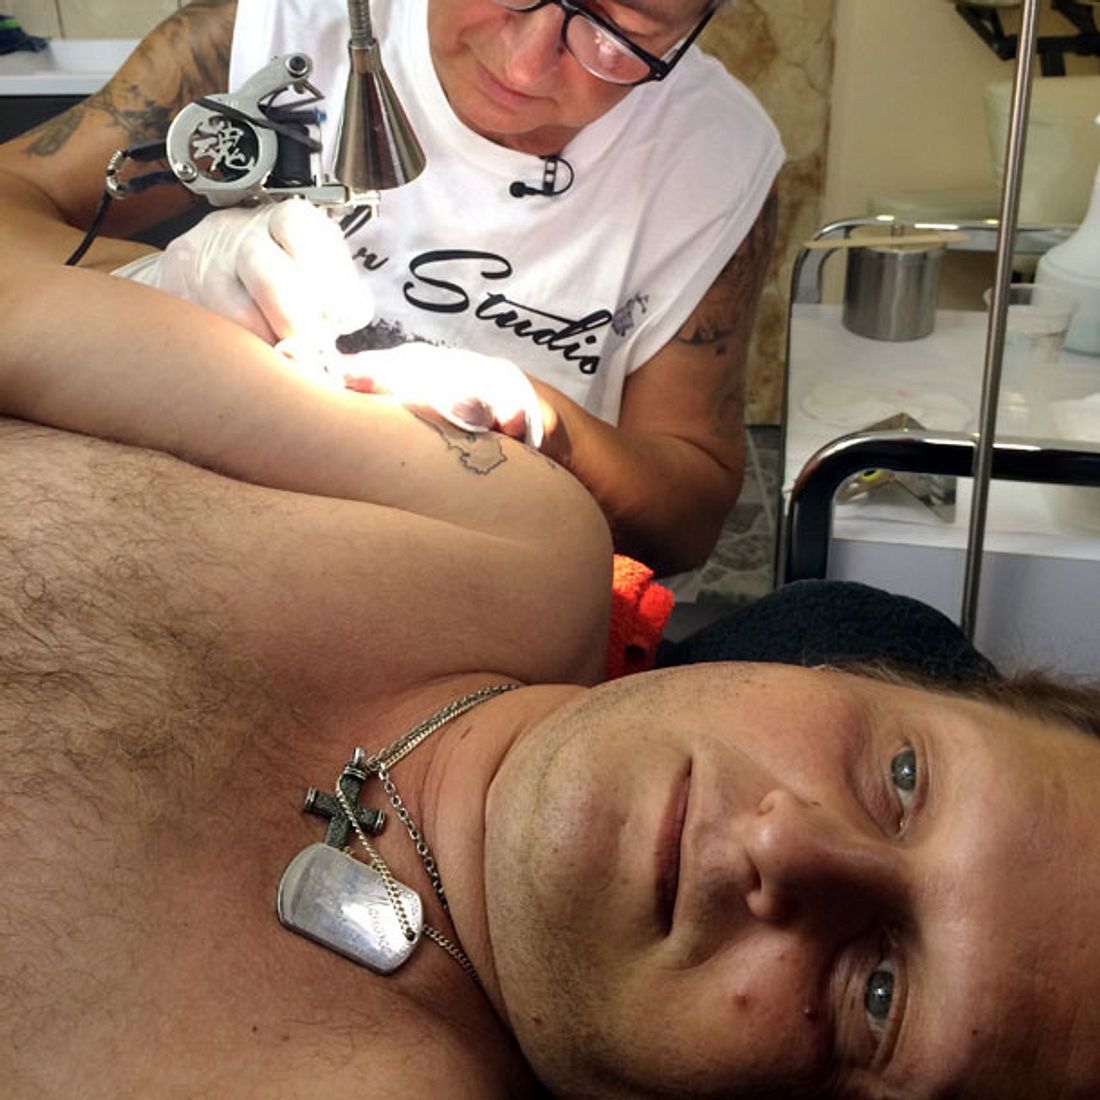 Jens Büchner bekommt ein VOX-Tattoo